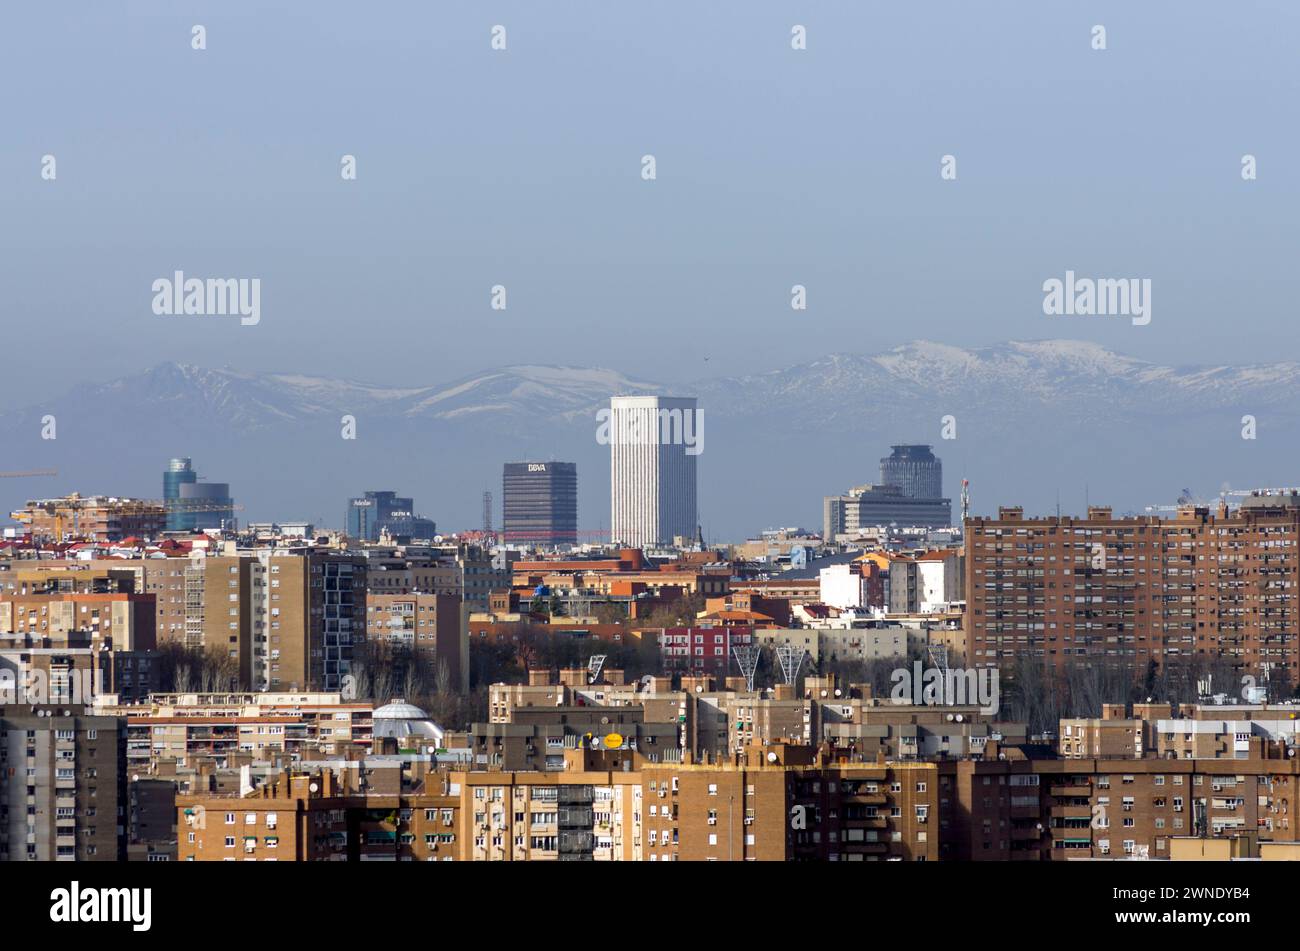 Vista de Azca desde el Mirador Cerro del Tío Pío. Madrid. España Stock Photo